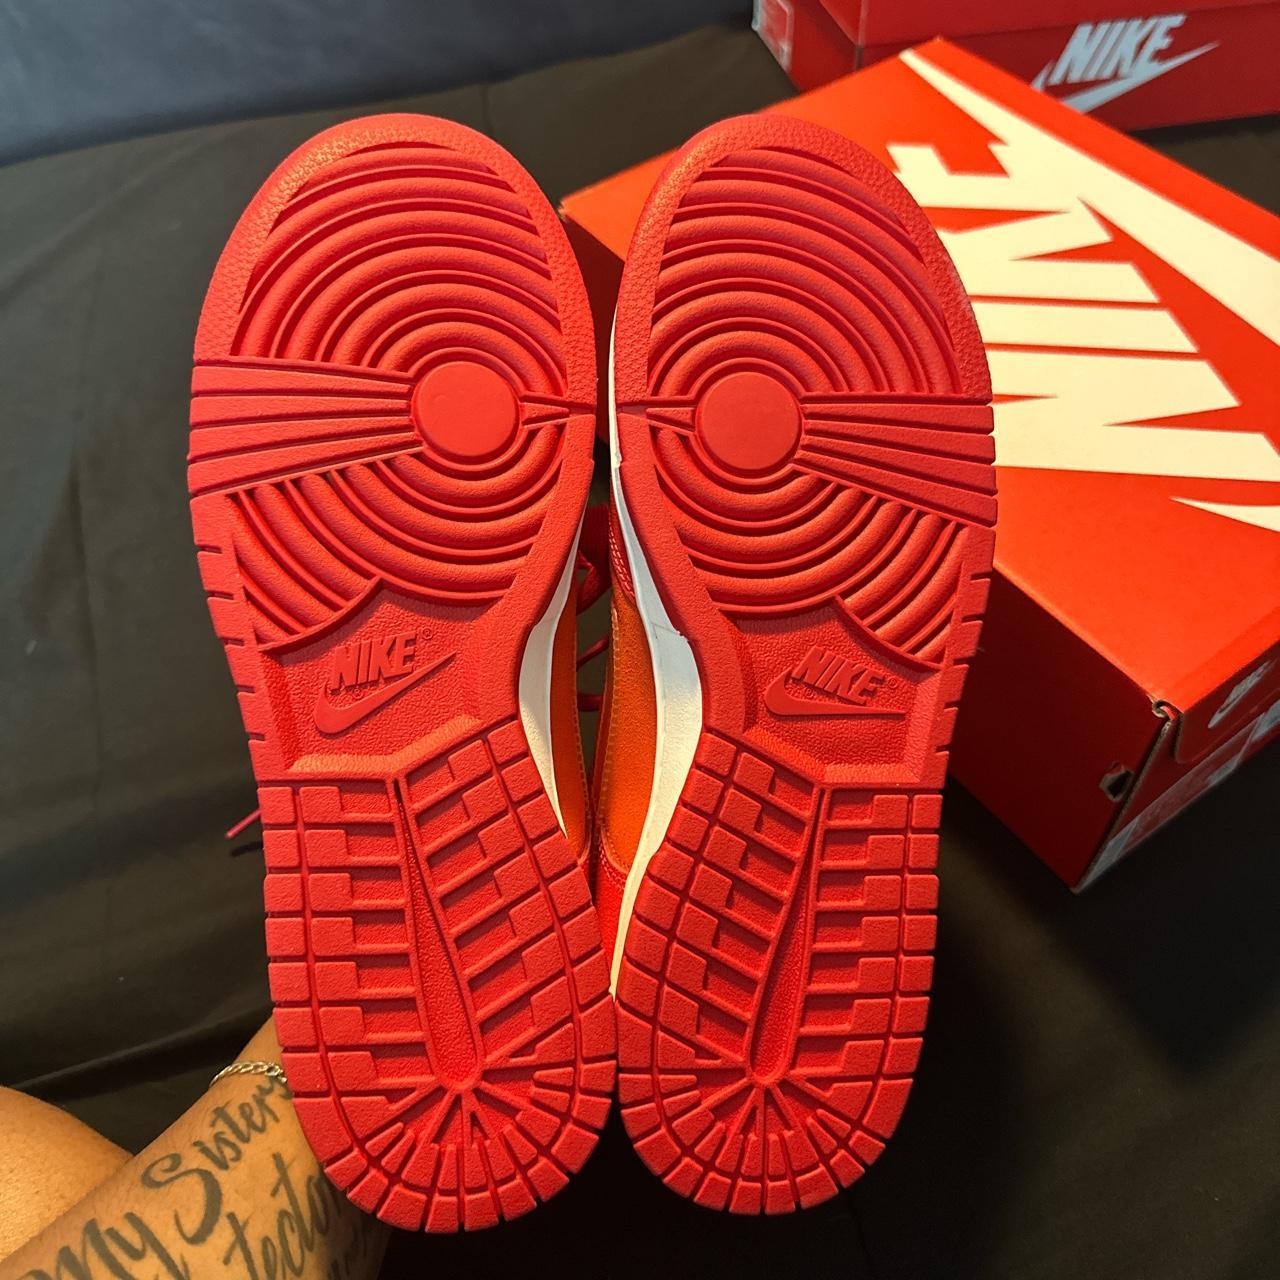 Nike Men's Red and Orange Footwear | Depop